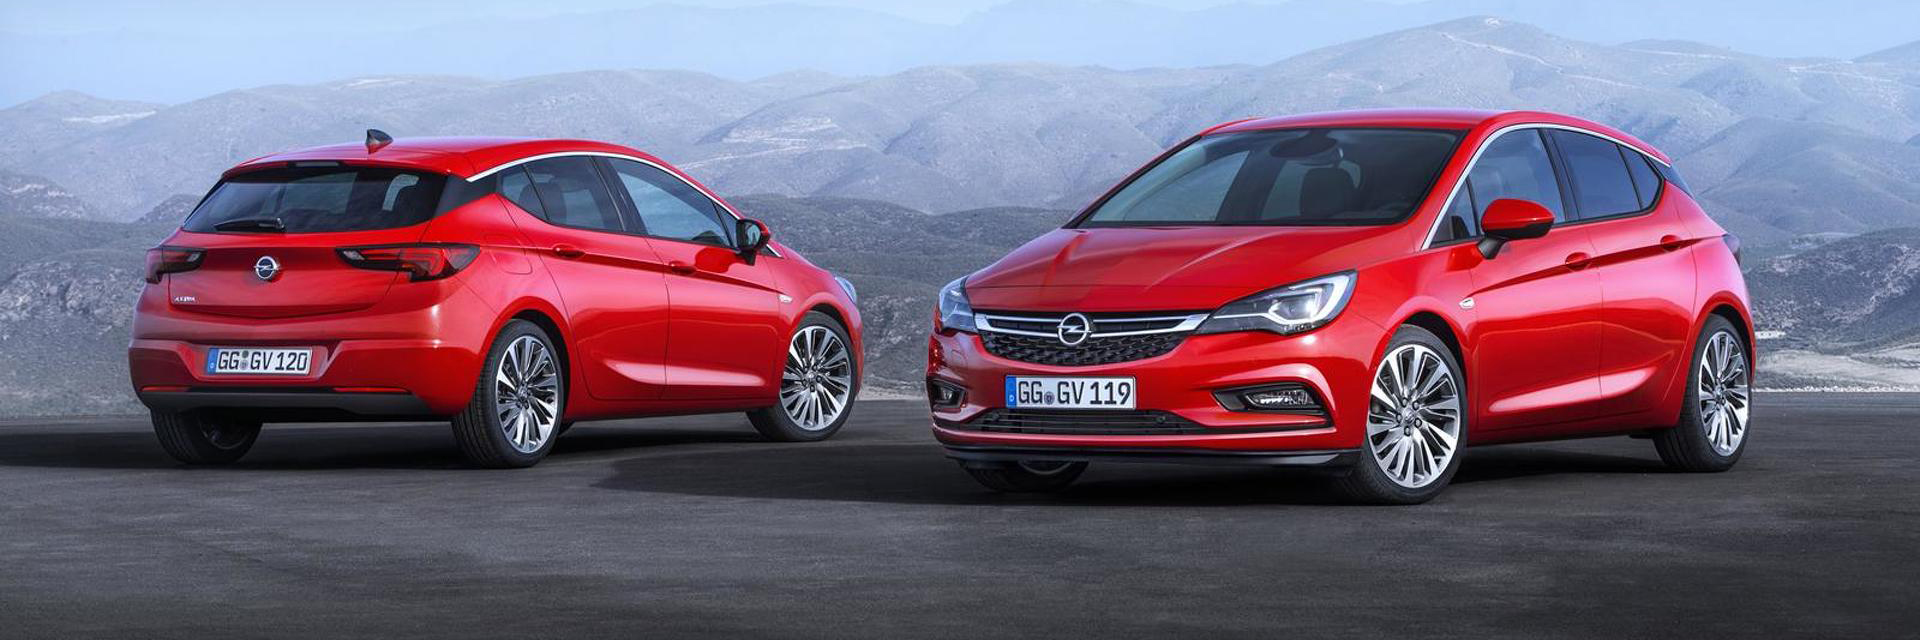 Opel Astra, carros usados, carros novos, carros de serviço